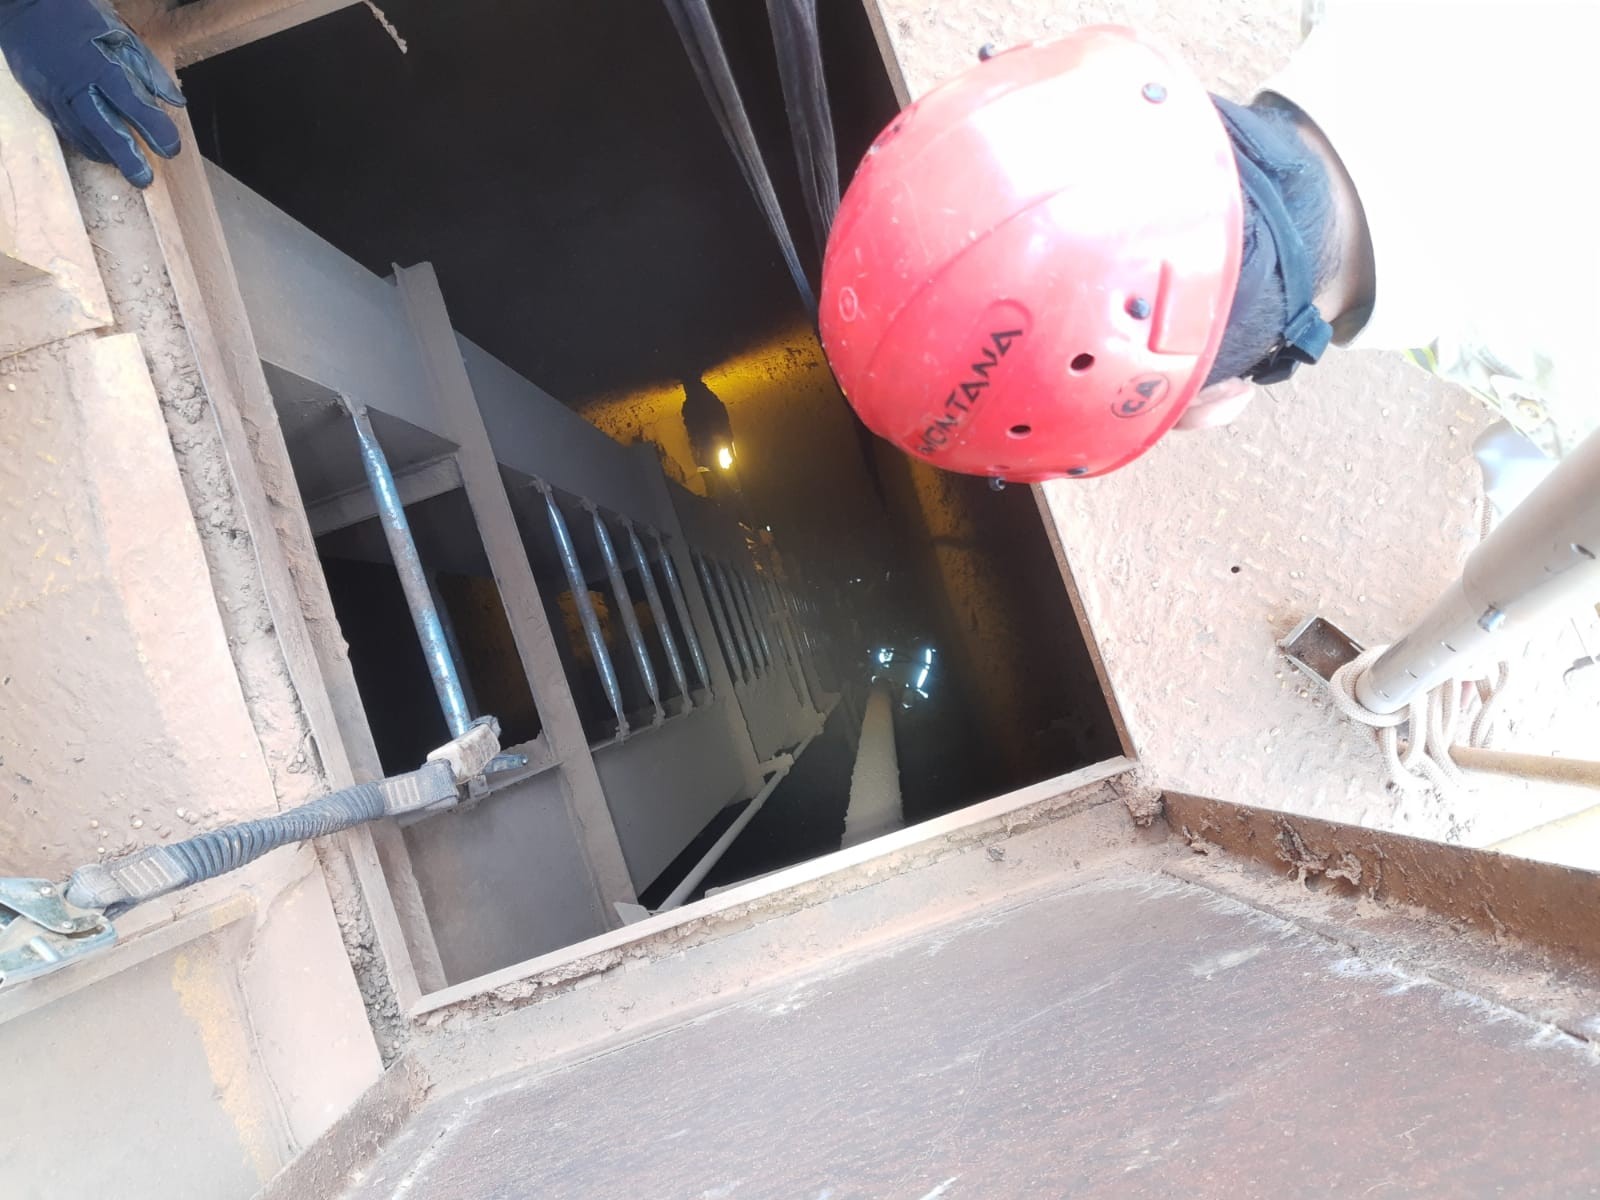 Trabalhador despenca de altura de 8 metros em fosso de elevador de indústria, em Maringá